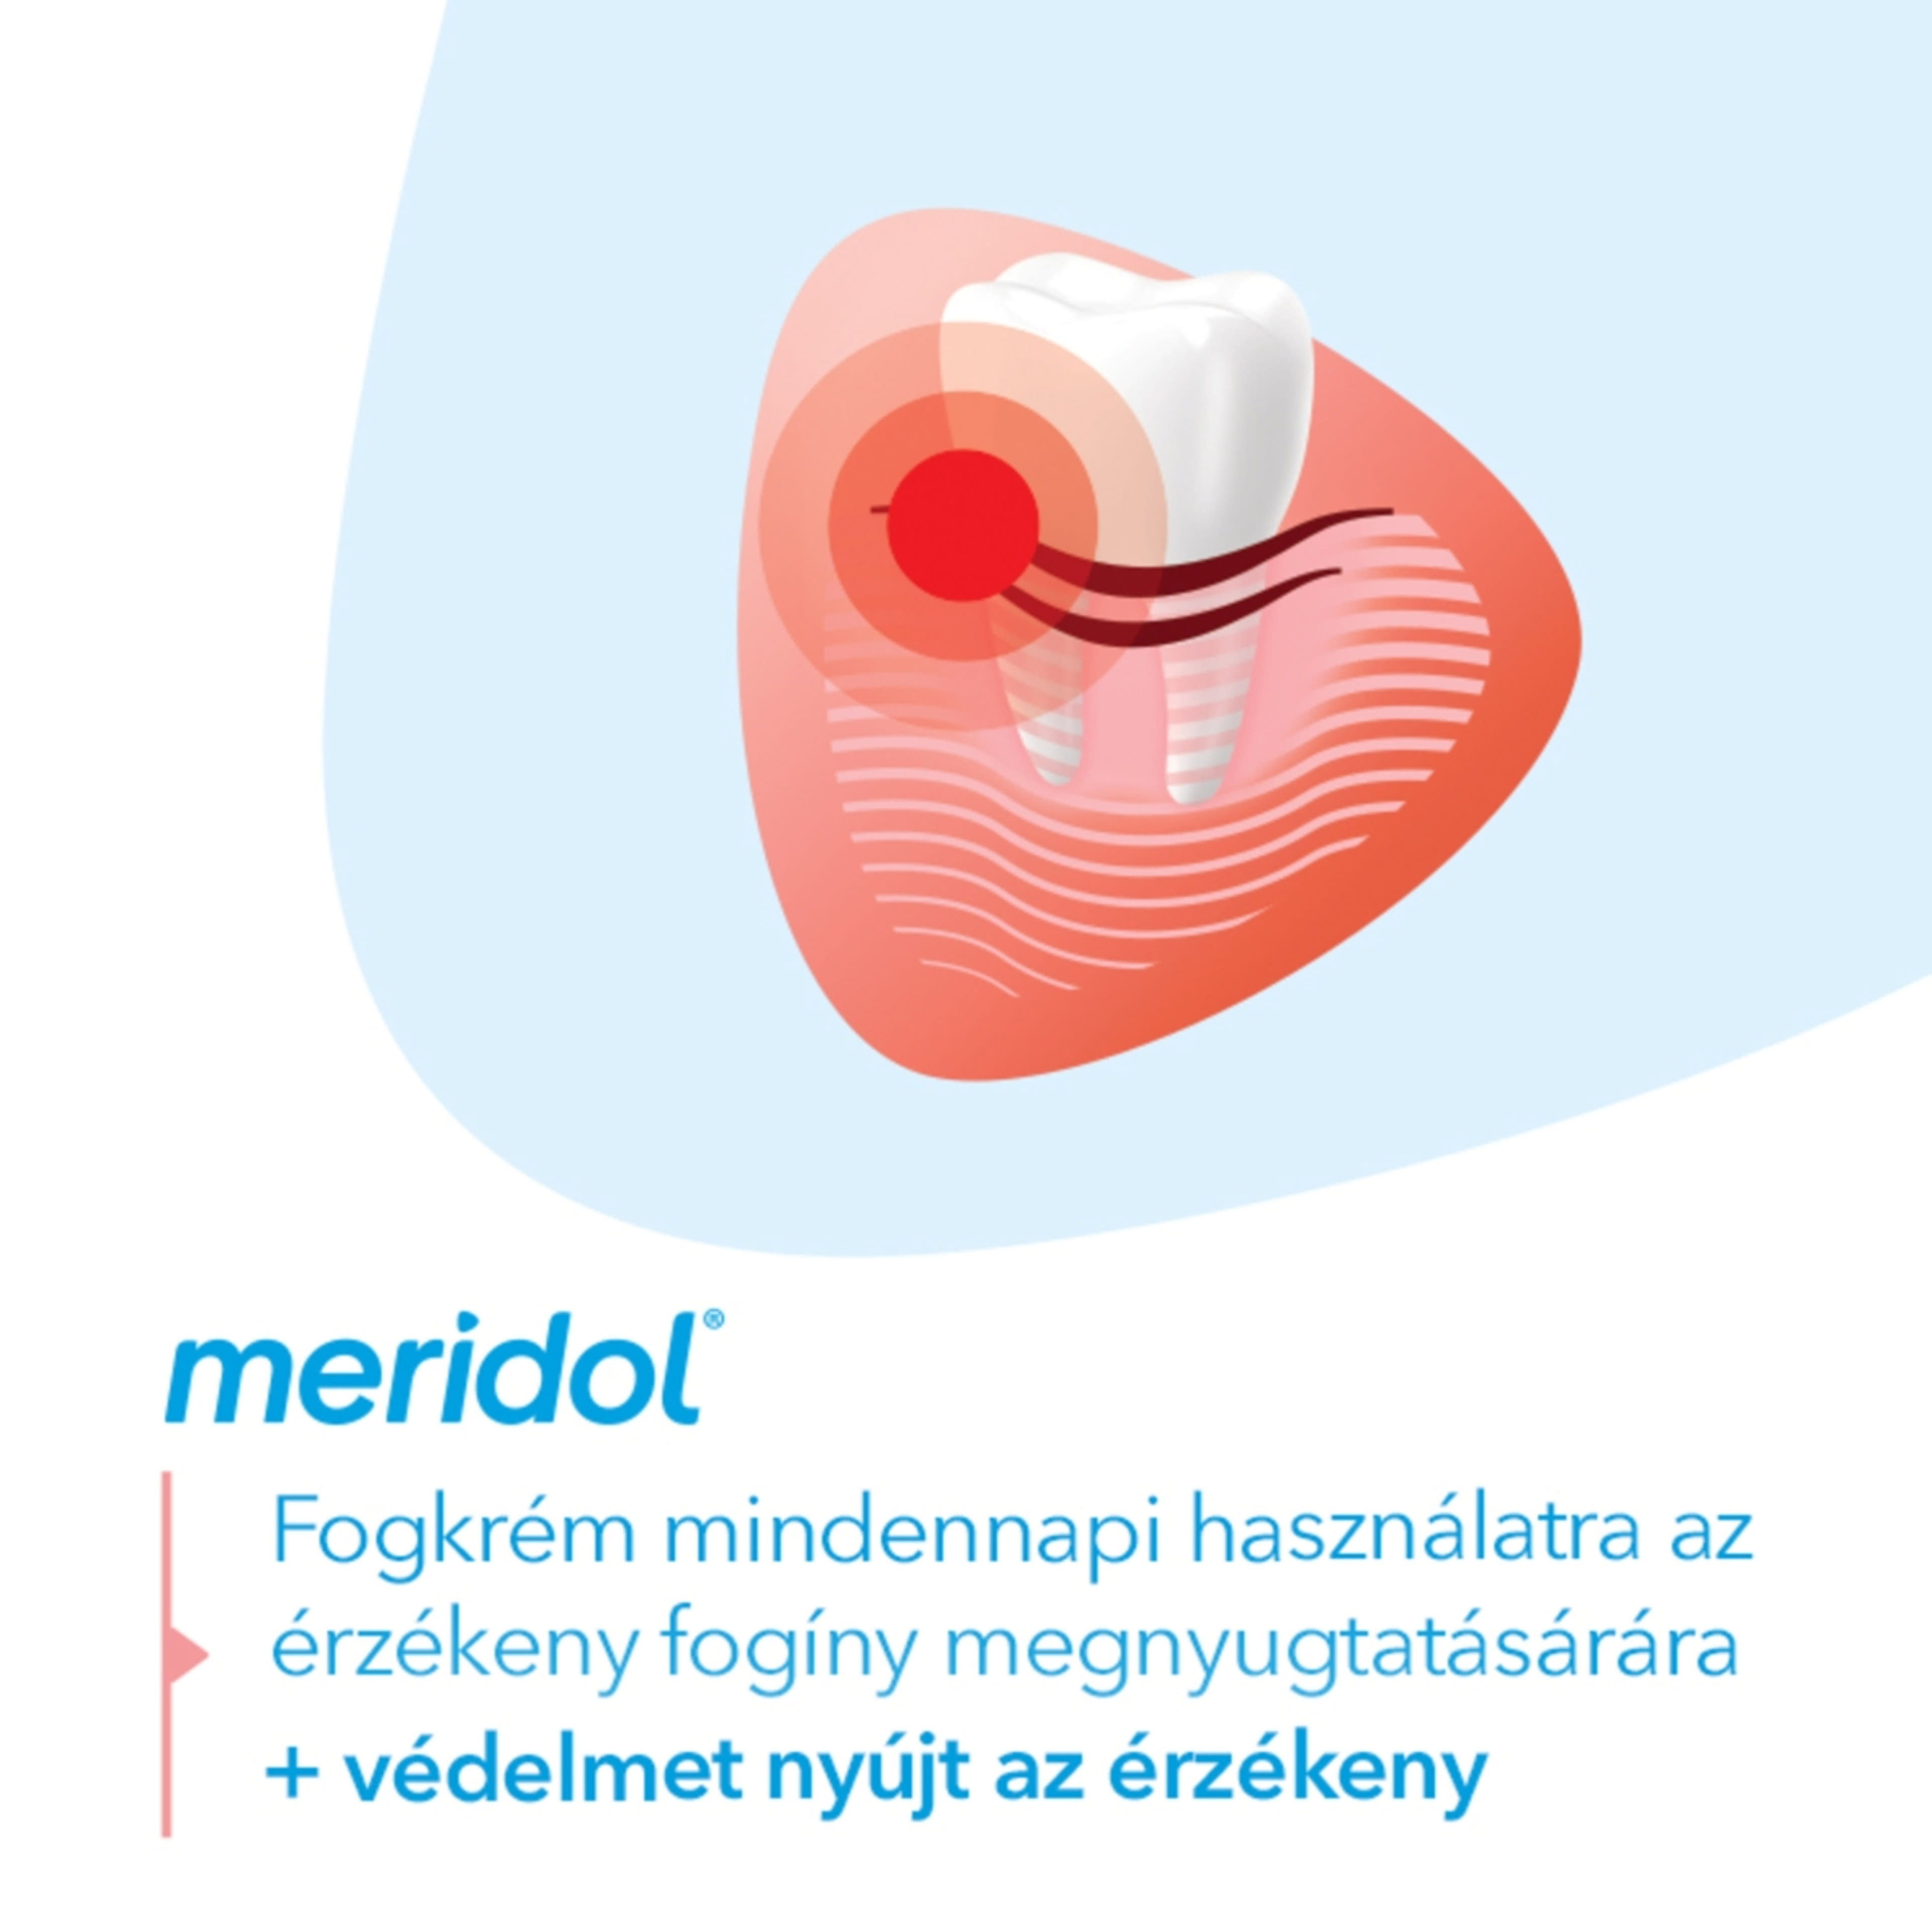 Meridol Complete Care fogkrém érzékeny fogíny és fogak védelmére - 75 ml-5